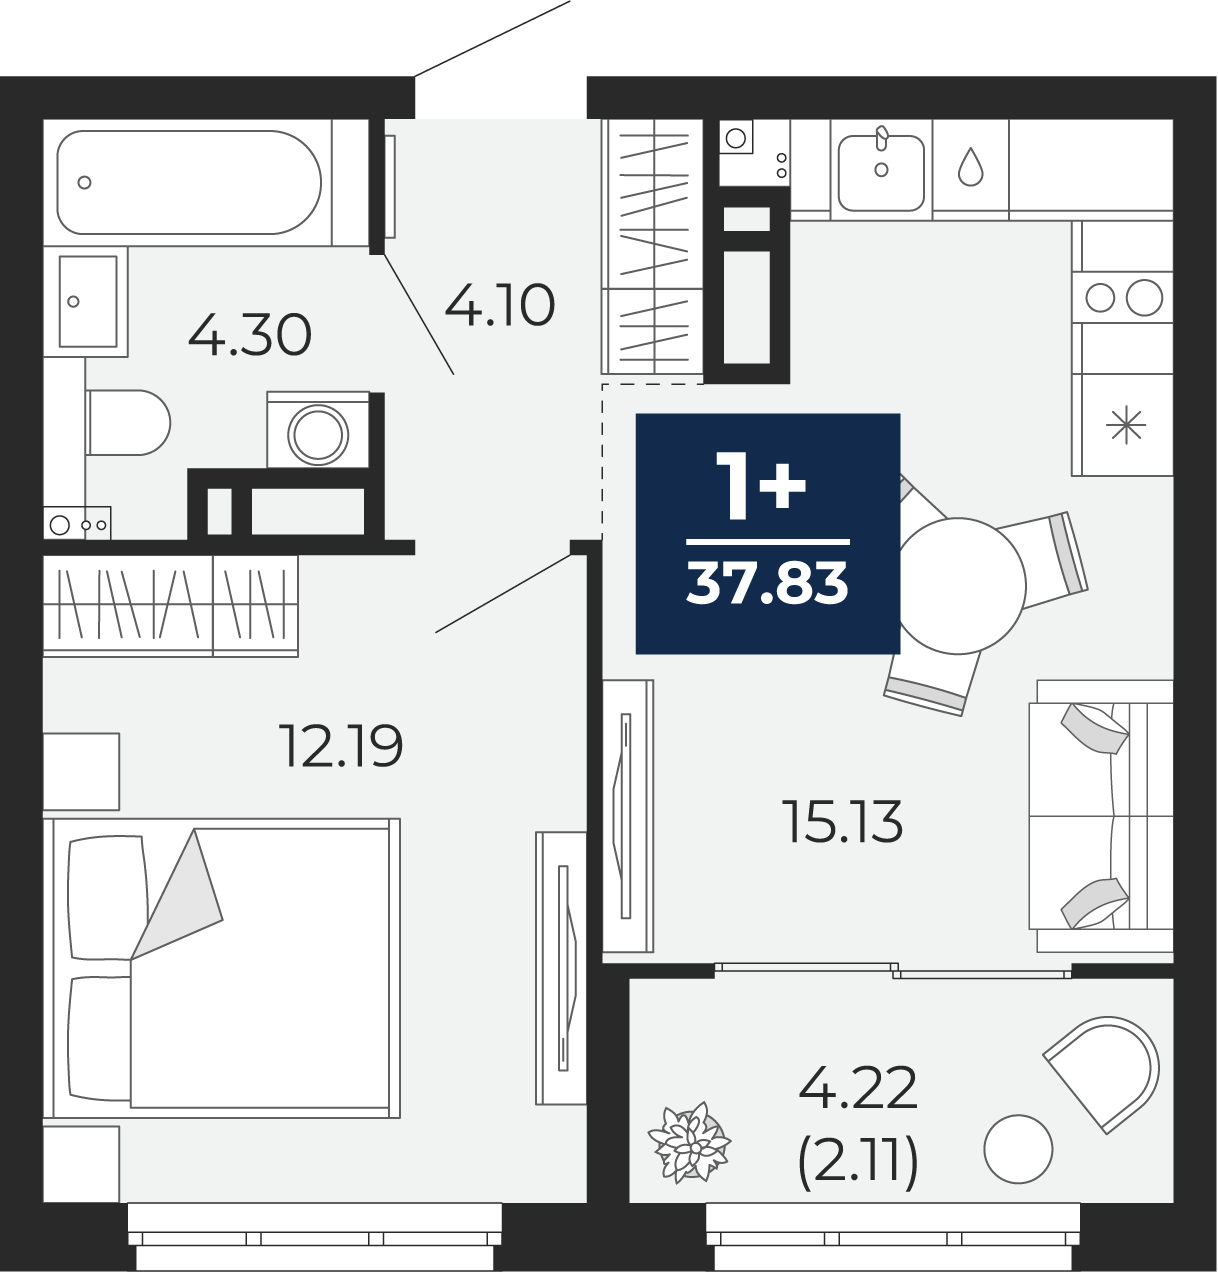 Квартира № 276, 1-комнатная, 37.83 кв. м, 11 этаж